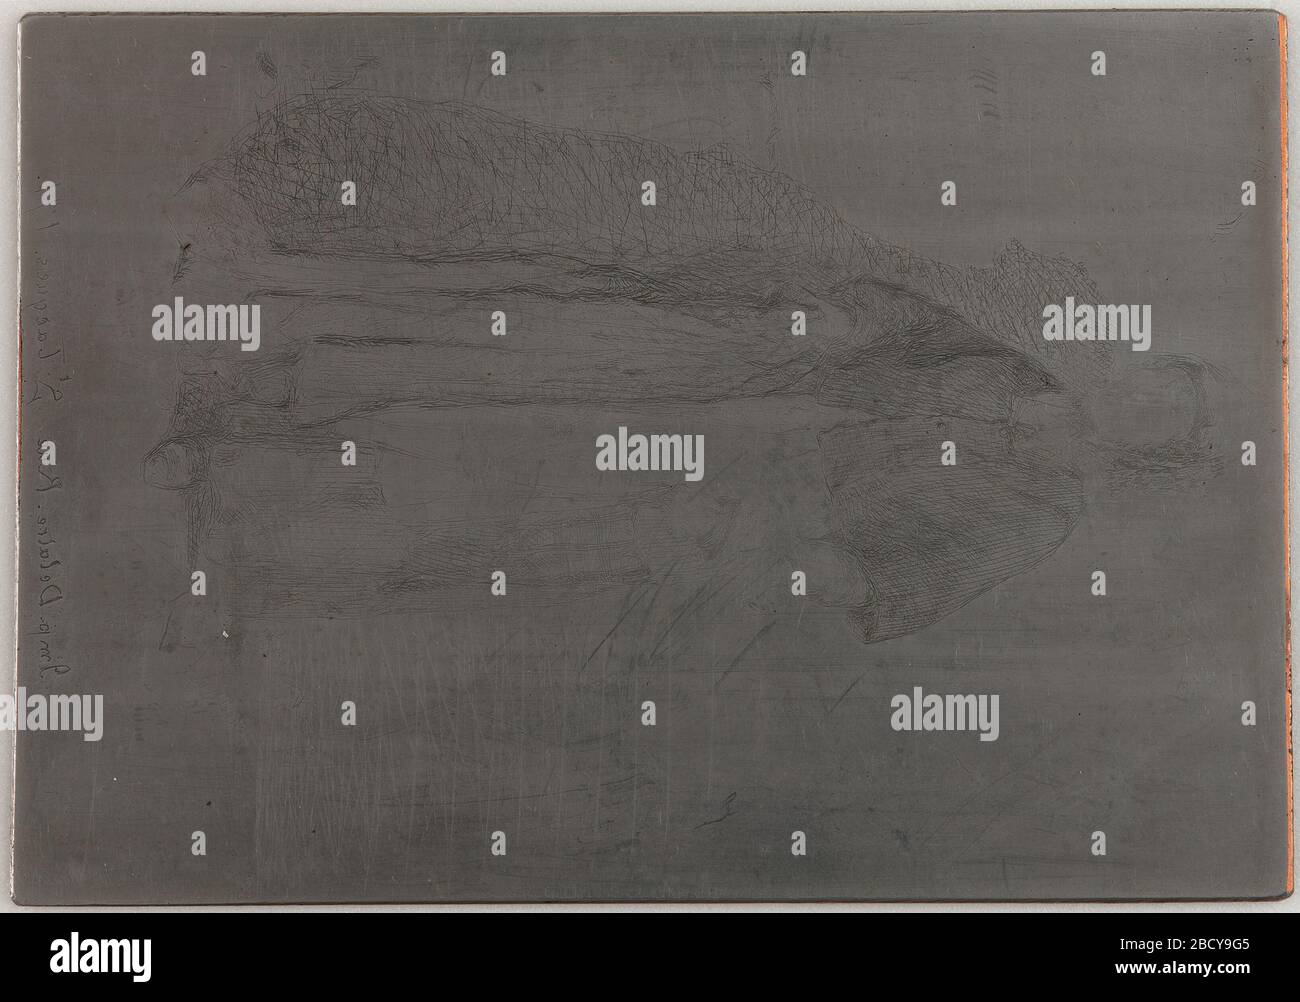 (Artista) James McNeill Whistler; Stati Uniti; 1857-1858; rame rivestito in acciaio; H x L: 12.9 x 9 cm (5 1/16 x 3 9/16 in); dono di Charles Lang Freer la Mere Gerard uno dei dodici Etchings dalla natura Foto Stock